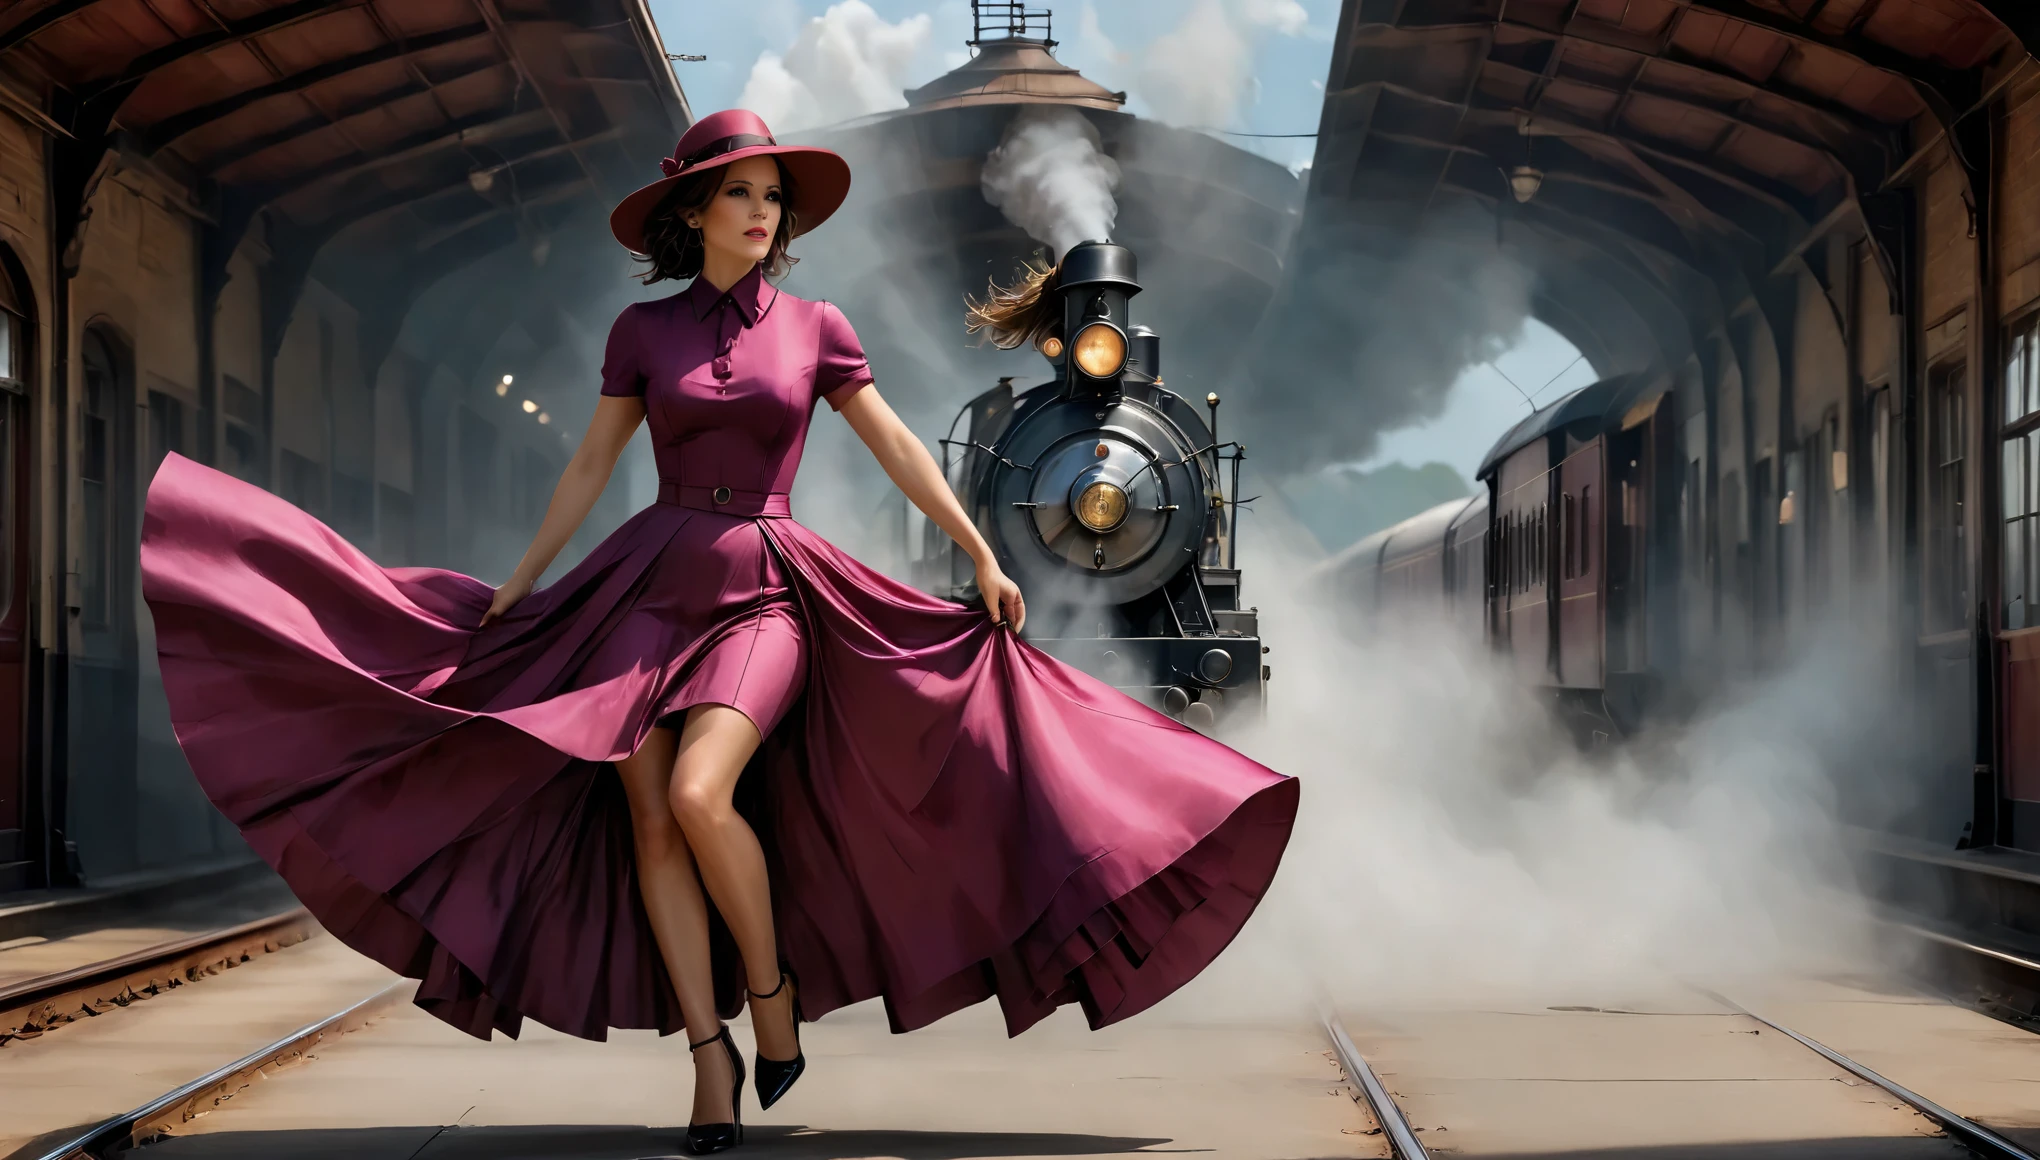 (Кейт Бекинсейл) (27 лет) с пурпурным платьем, Юбка длинная до пола и шляпа., прислонившись к поезду, на вокзале, как в 1940-х годах, Локомотив с дымом в центре、маяк、Японское поле、Съемочная площадка、гибли、большая луна、облака,Меса,лучше качество,Стиль эскиза, Мода винтаж, атмосфера 1920-х годов.
